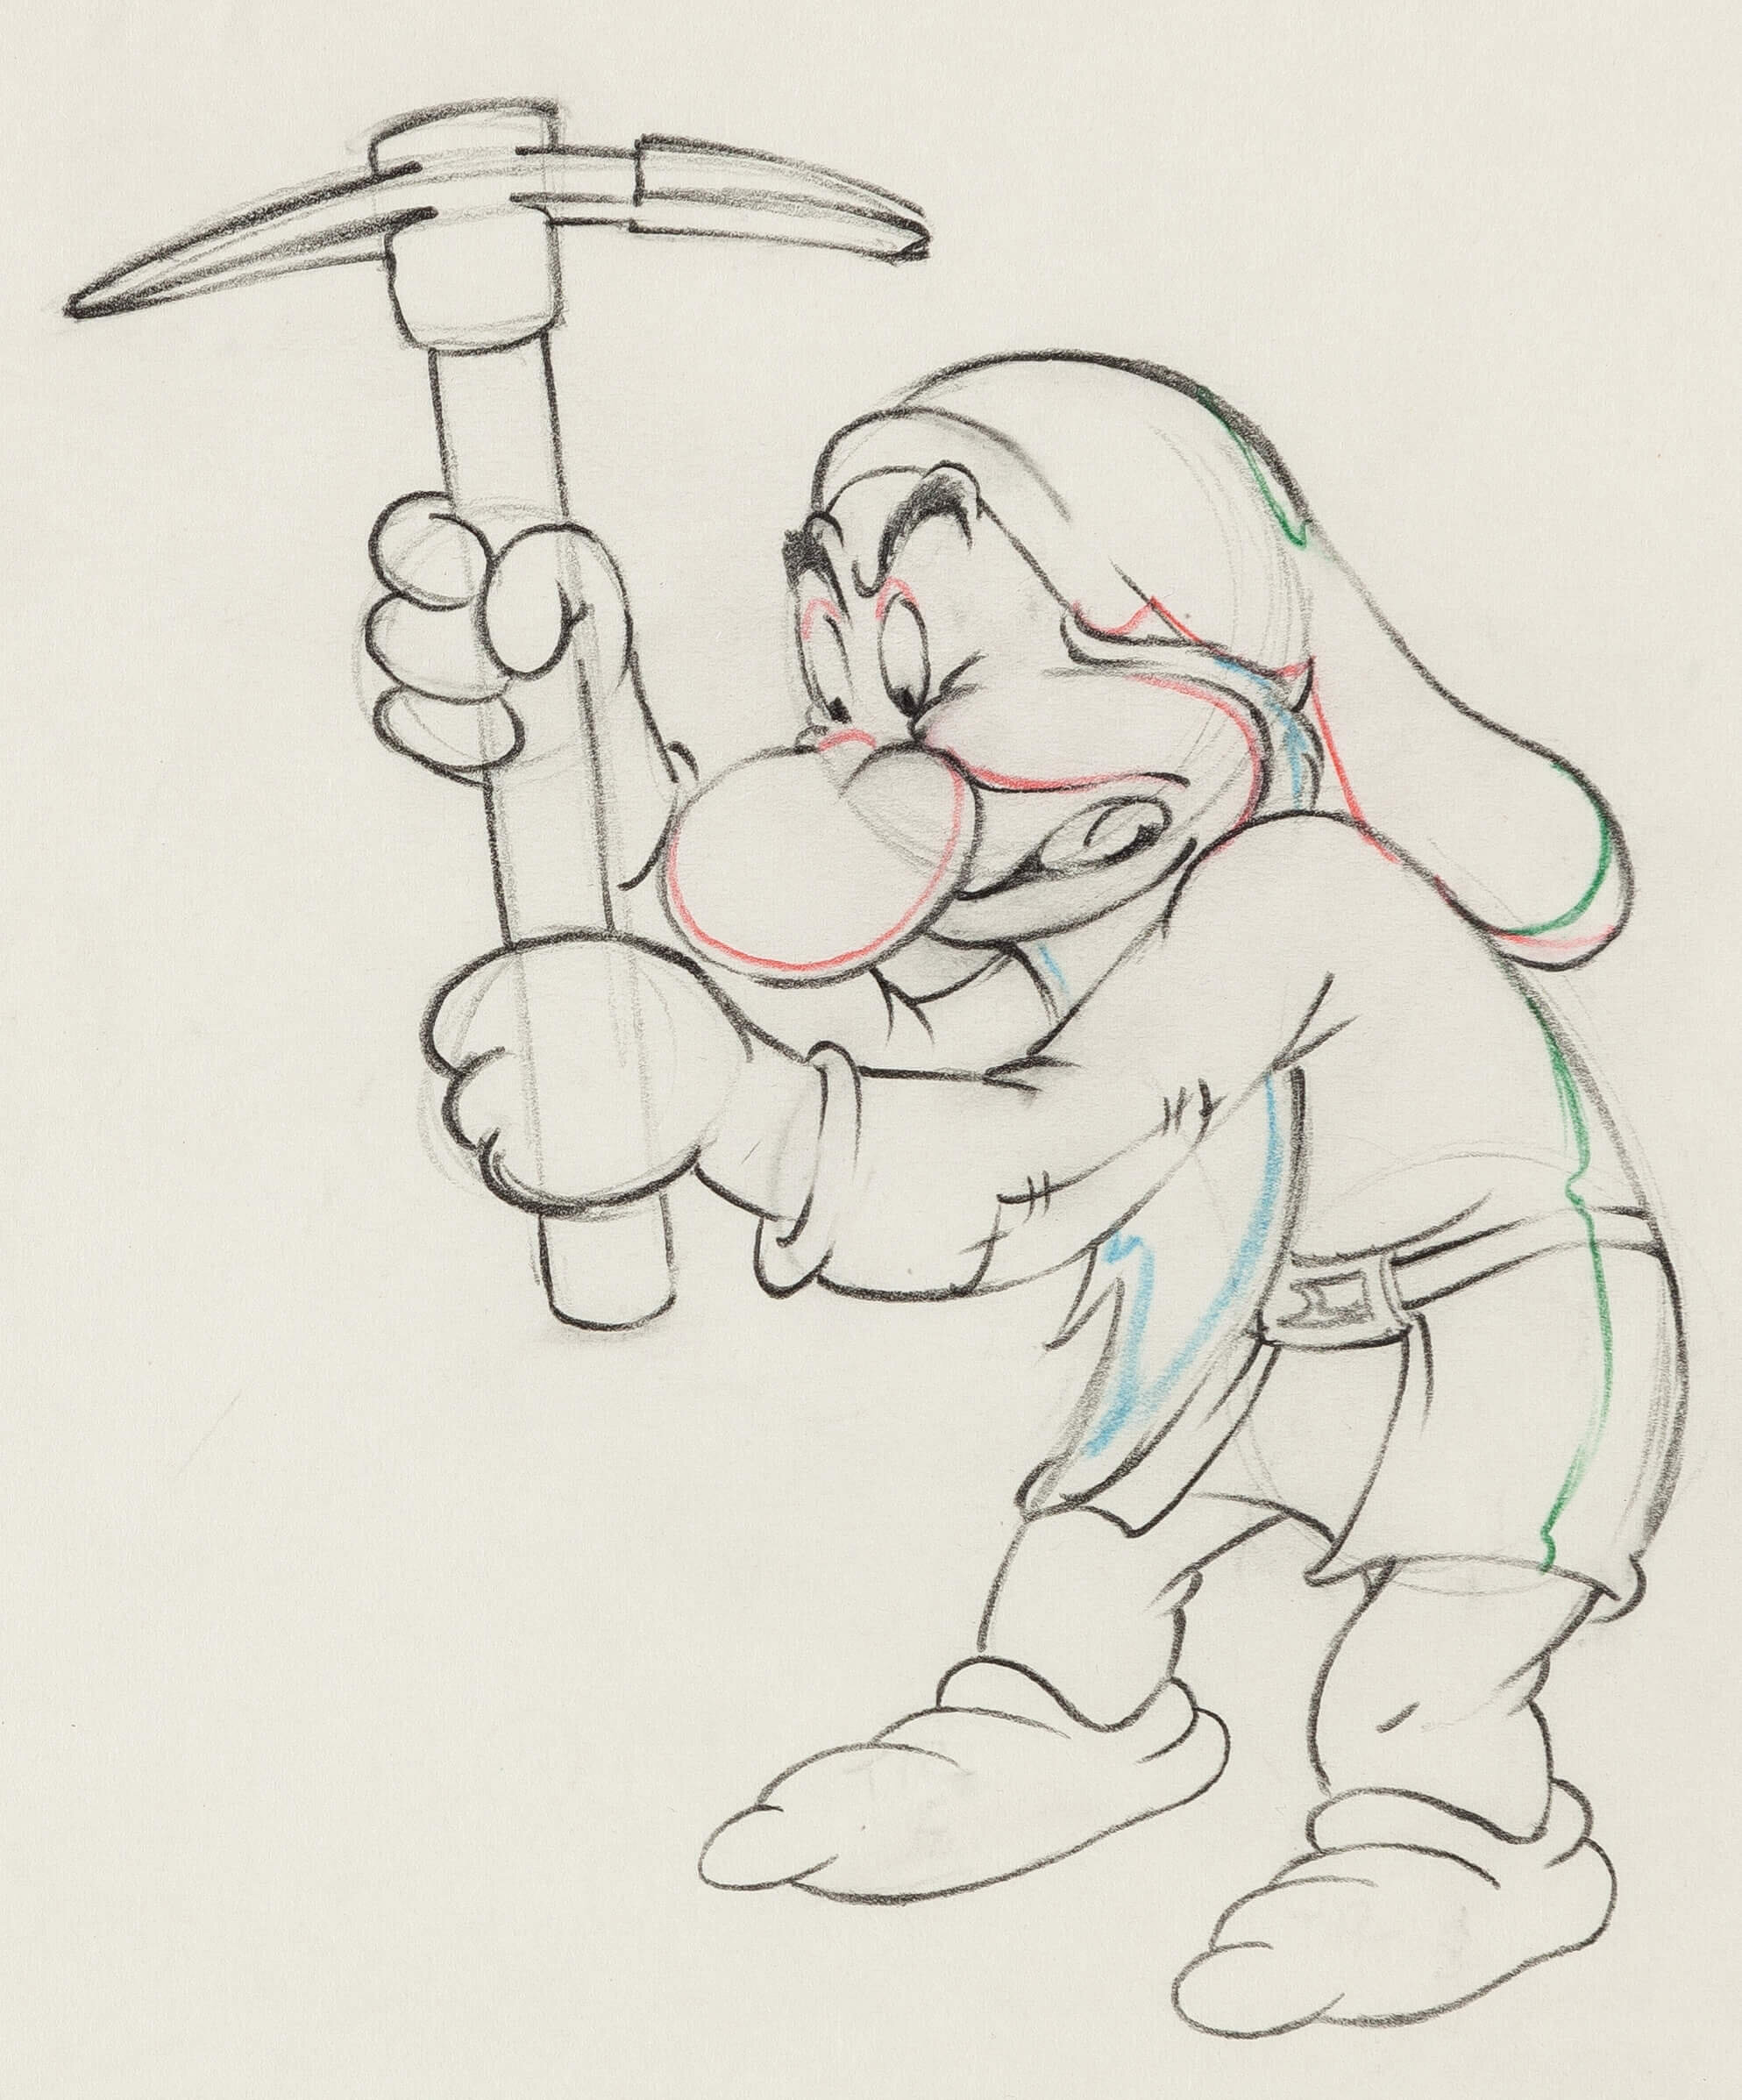 grumpy dwarf drawing